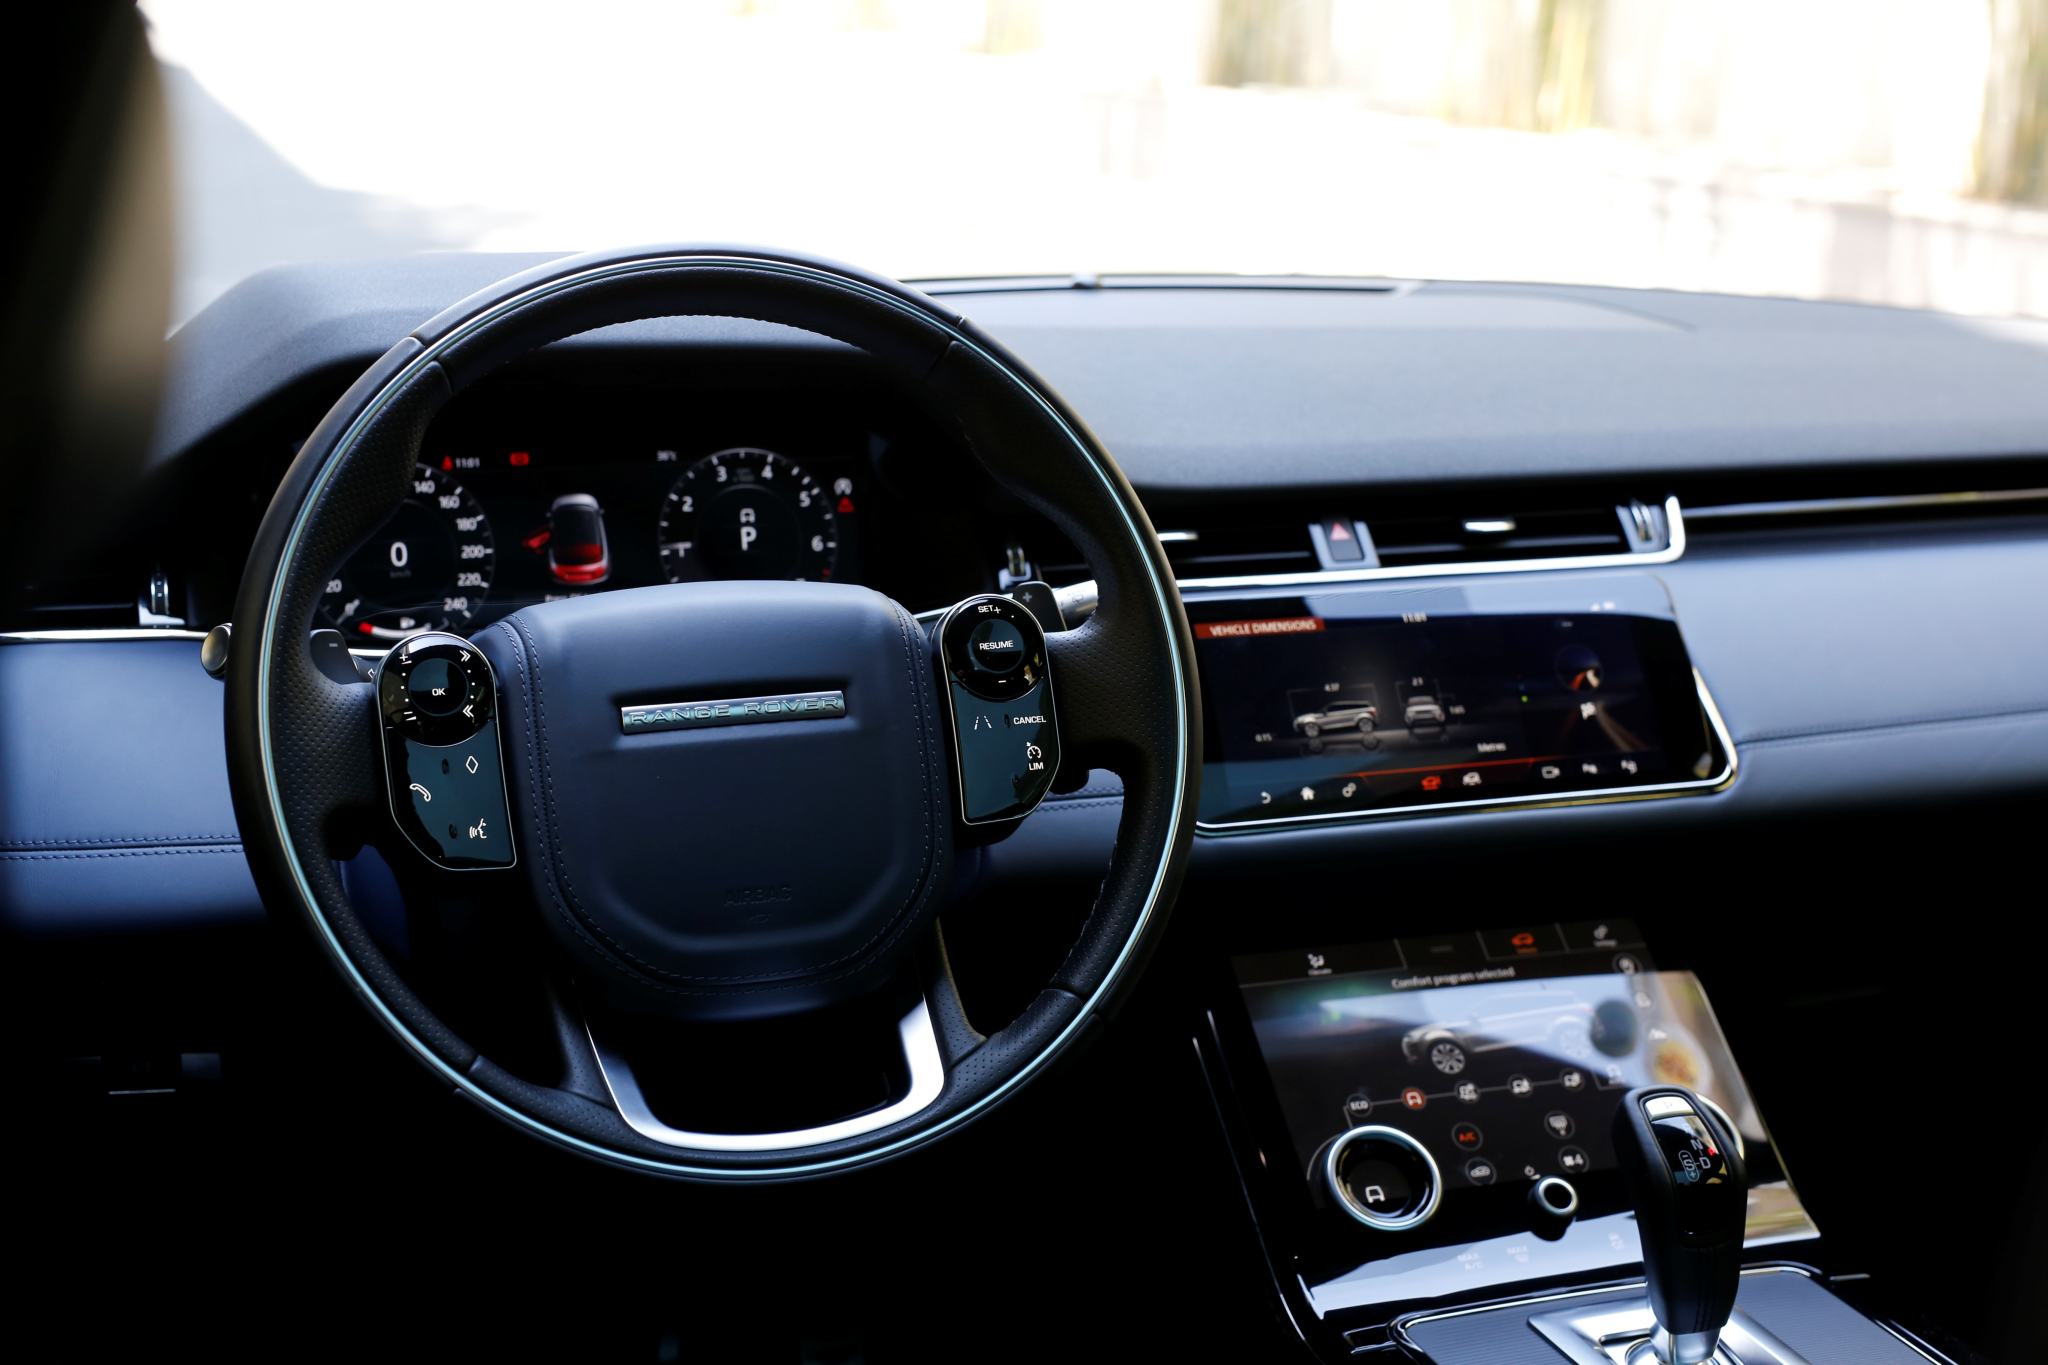 Range Rover Evoque sở hữu thiết kế tinh tế và cá tính, và đem lại trải nghiệm lái tuyệt vời. Sử dụng công nghệ tiên tiến, hiệu suất lái của chiếc xe này luôn được tăng cường. Nó sẽ là sự lựa chọn hoàn hảo cho những người ưa thích đẳng cấp và phong cách.